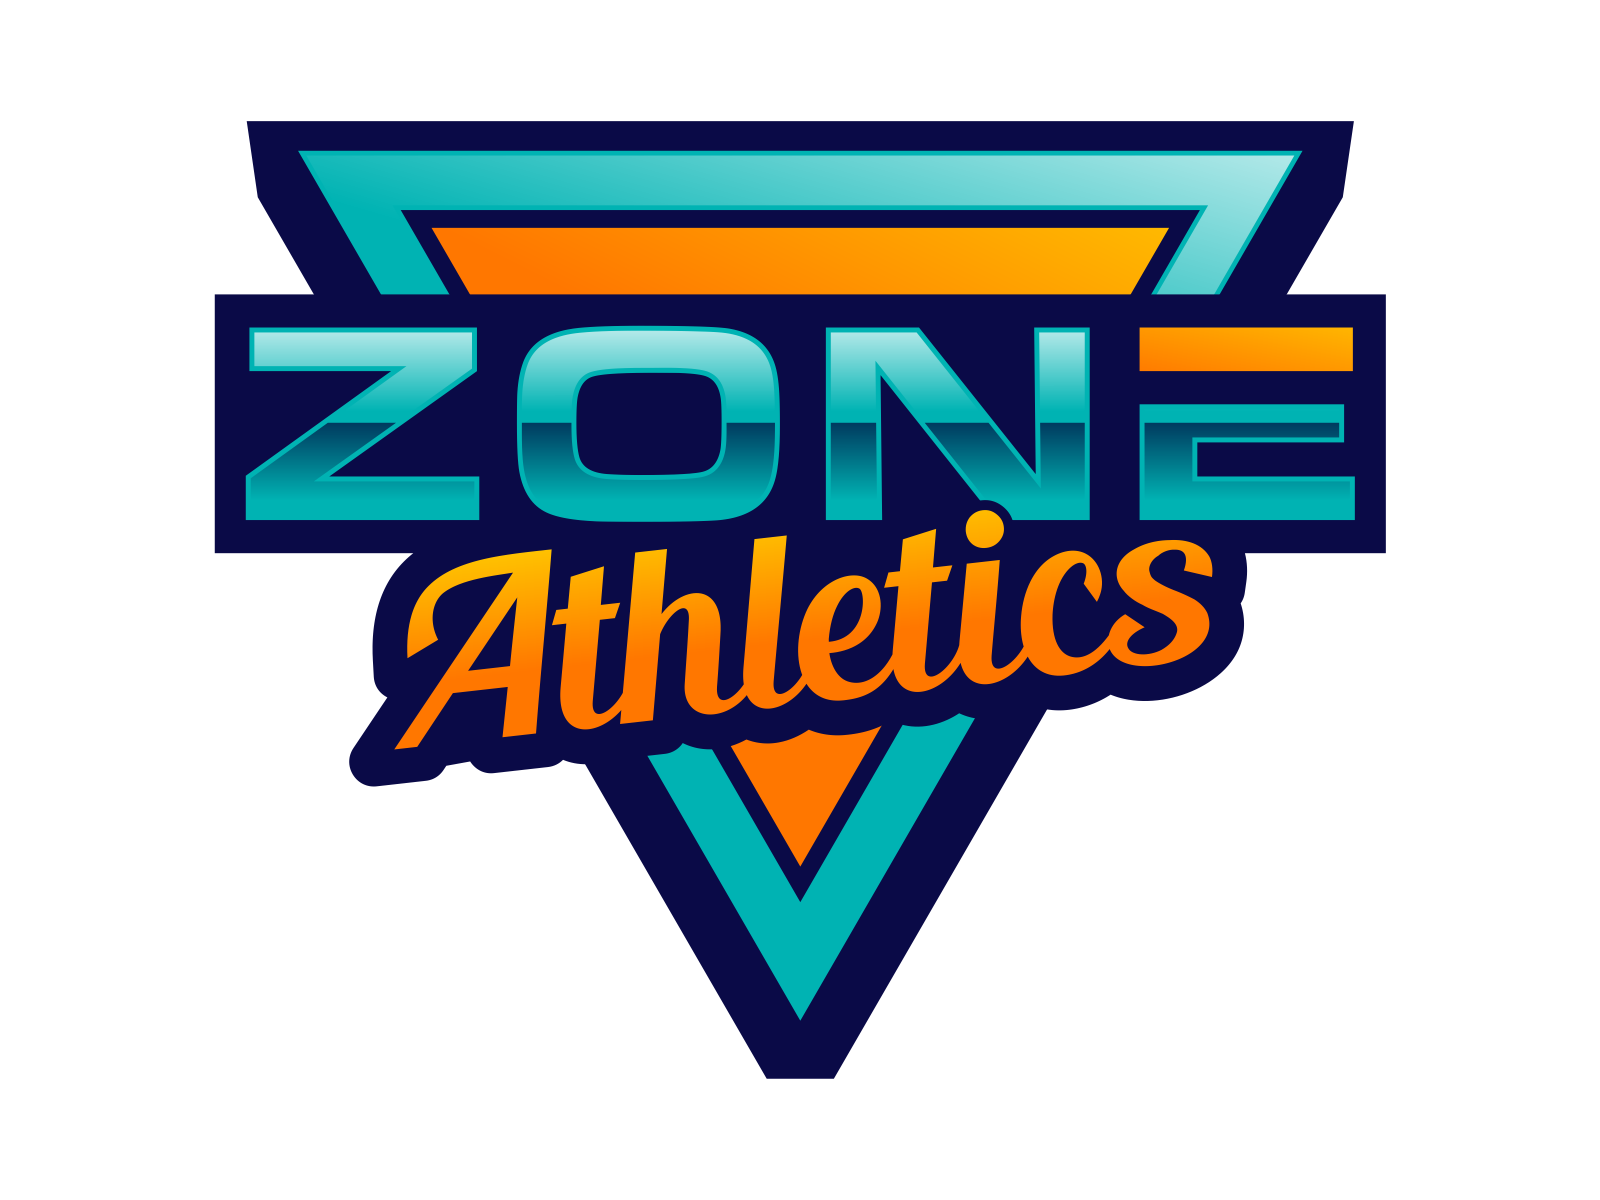 The Zone Athletics